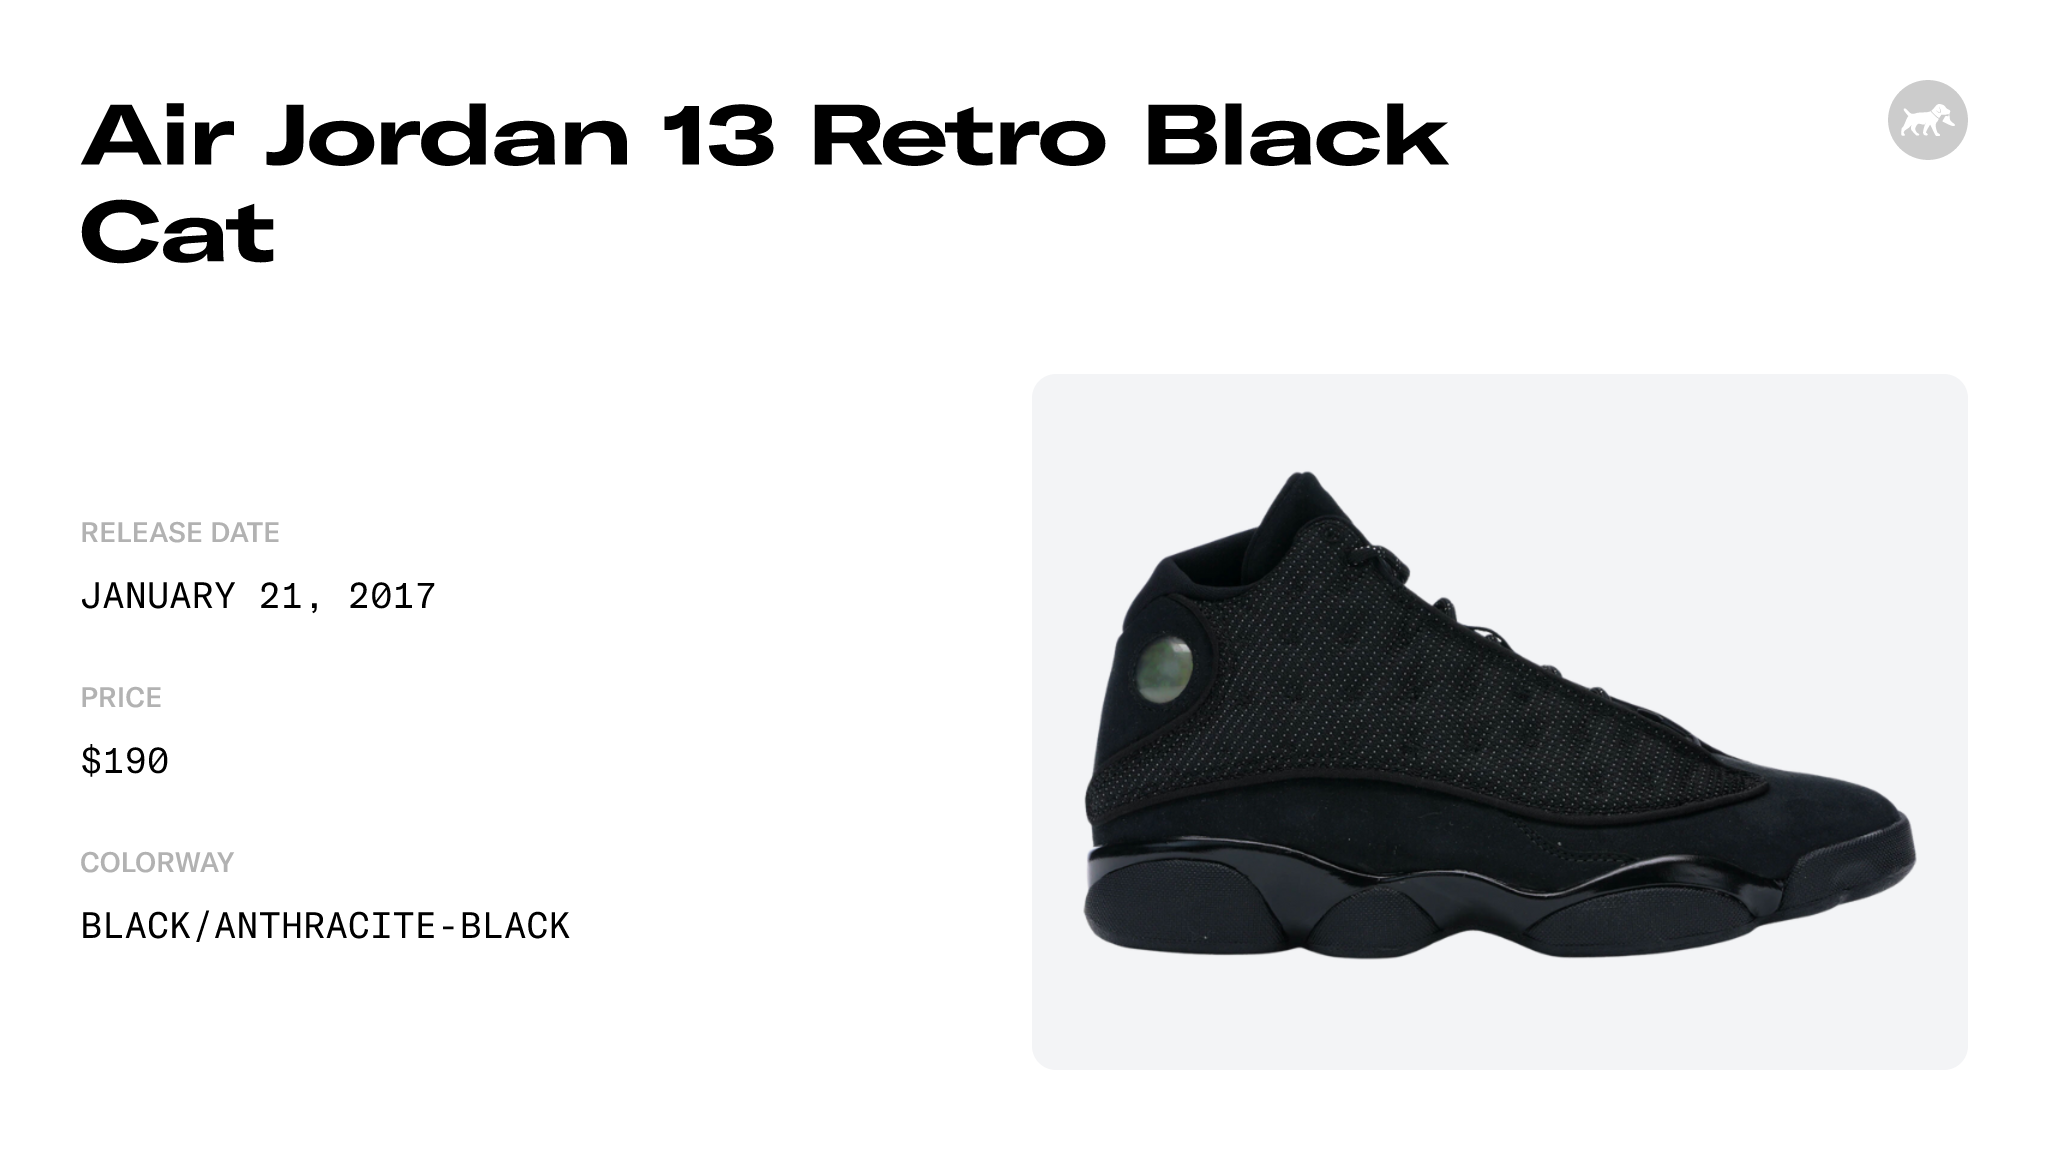 Air Jordan 13 Retro Black Cat - 414571-011 Raffles and Release Date